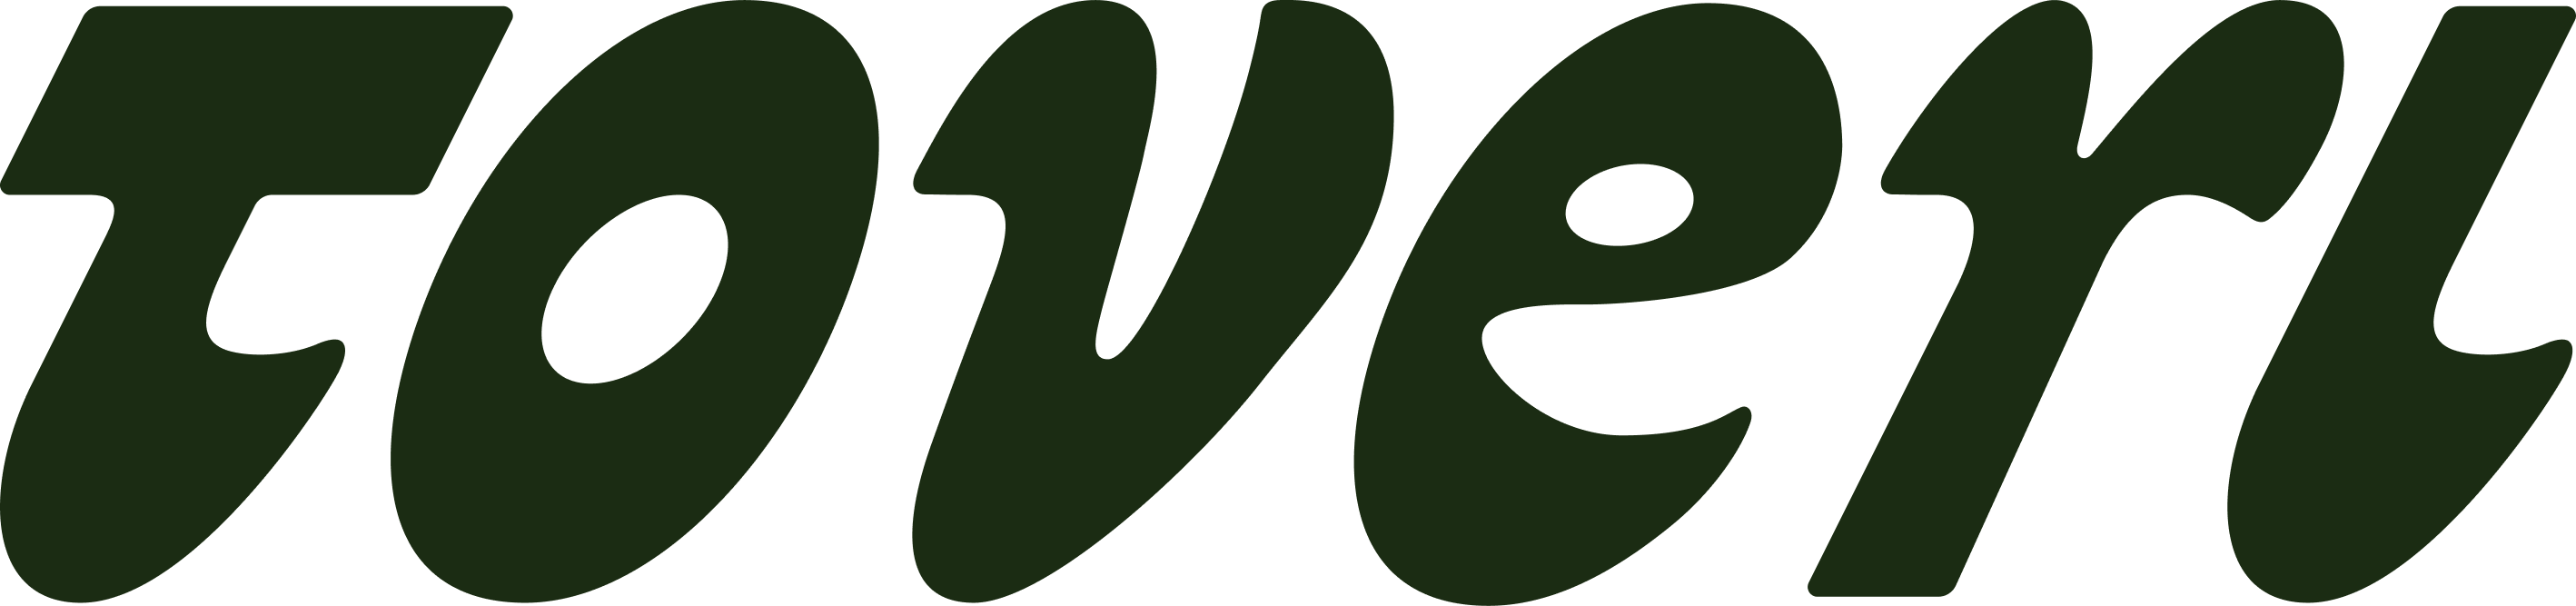 Toveri-Logo-2-1